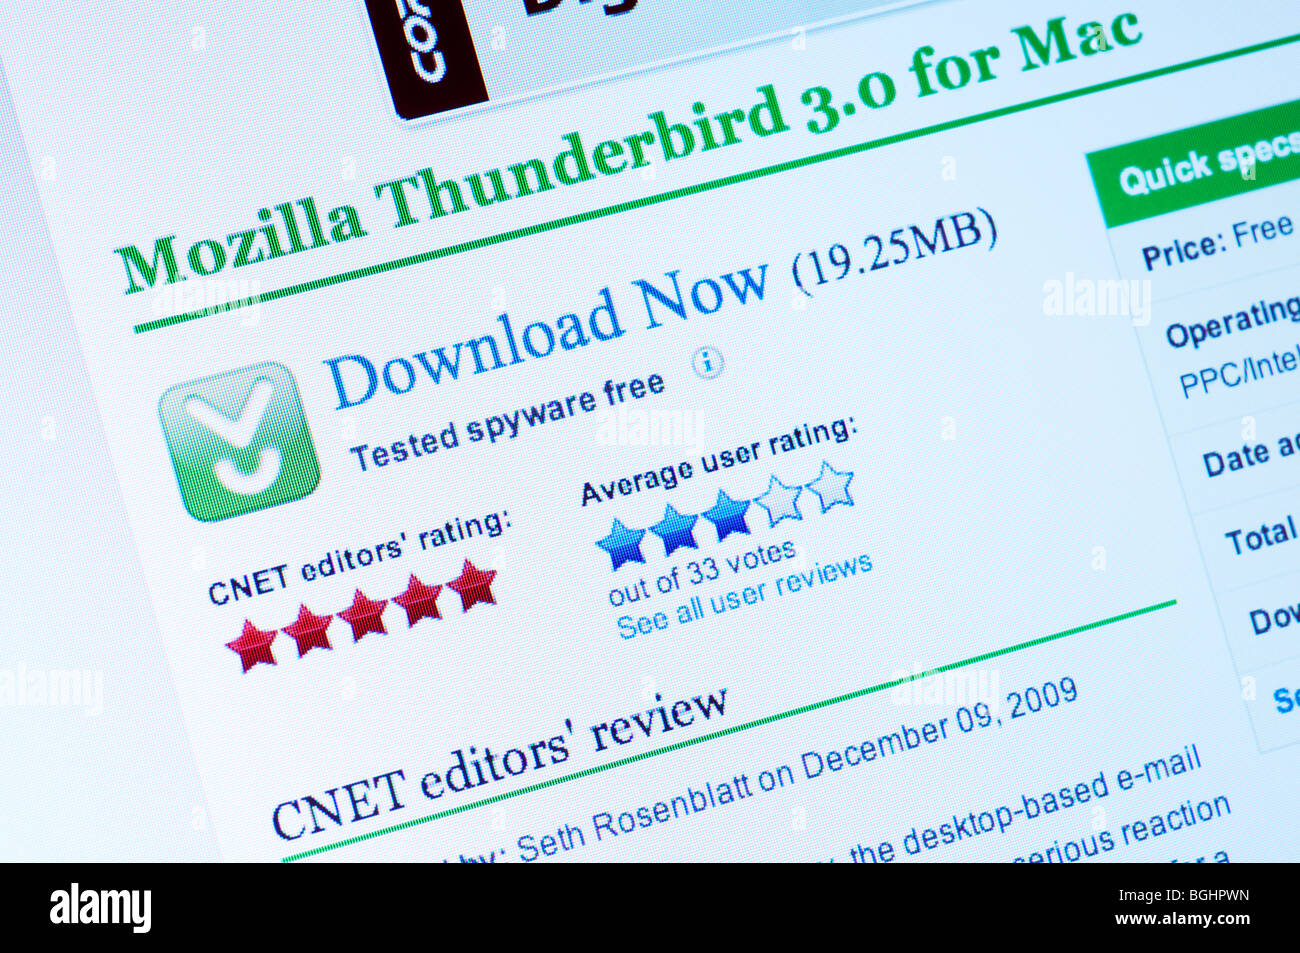 Mozilla Thunderbird herunterladen (Webseite) Stockfoto